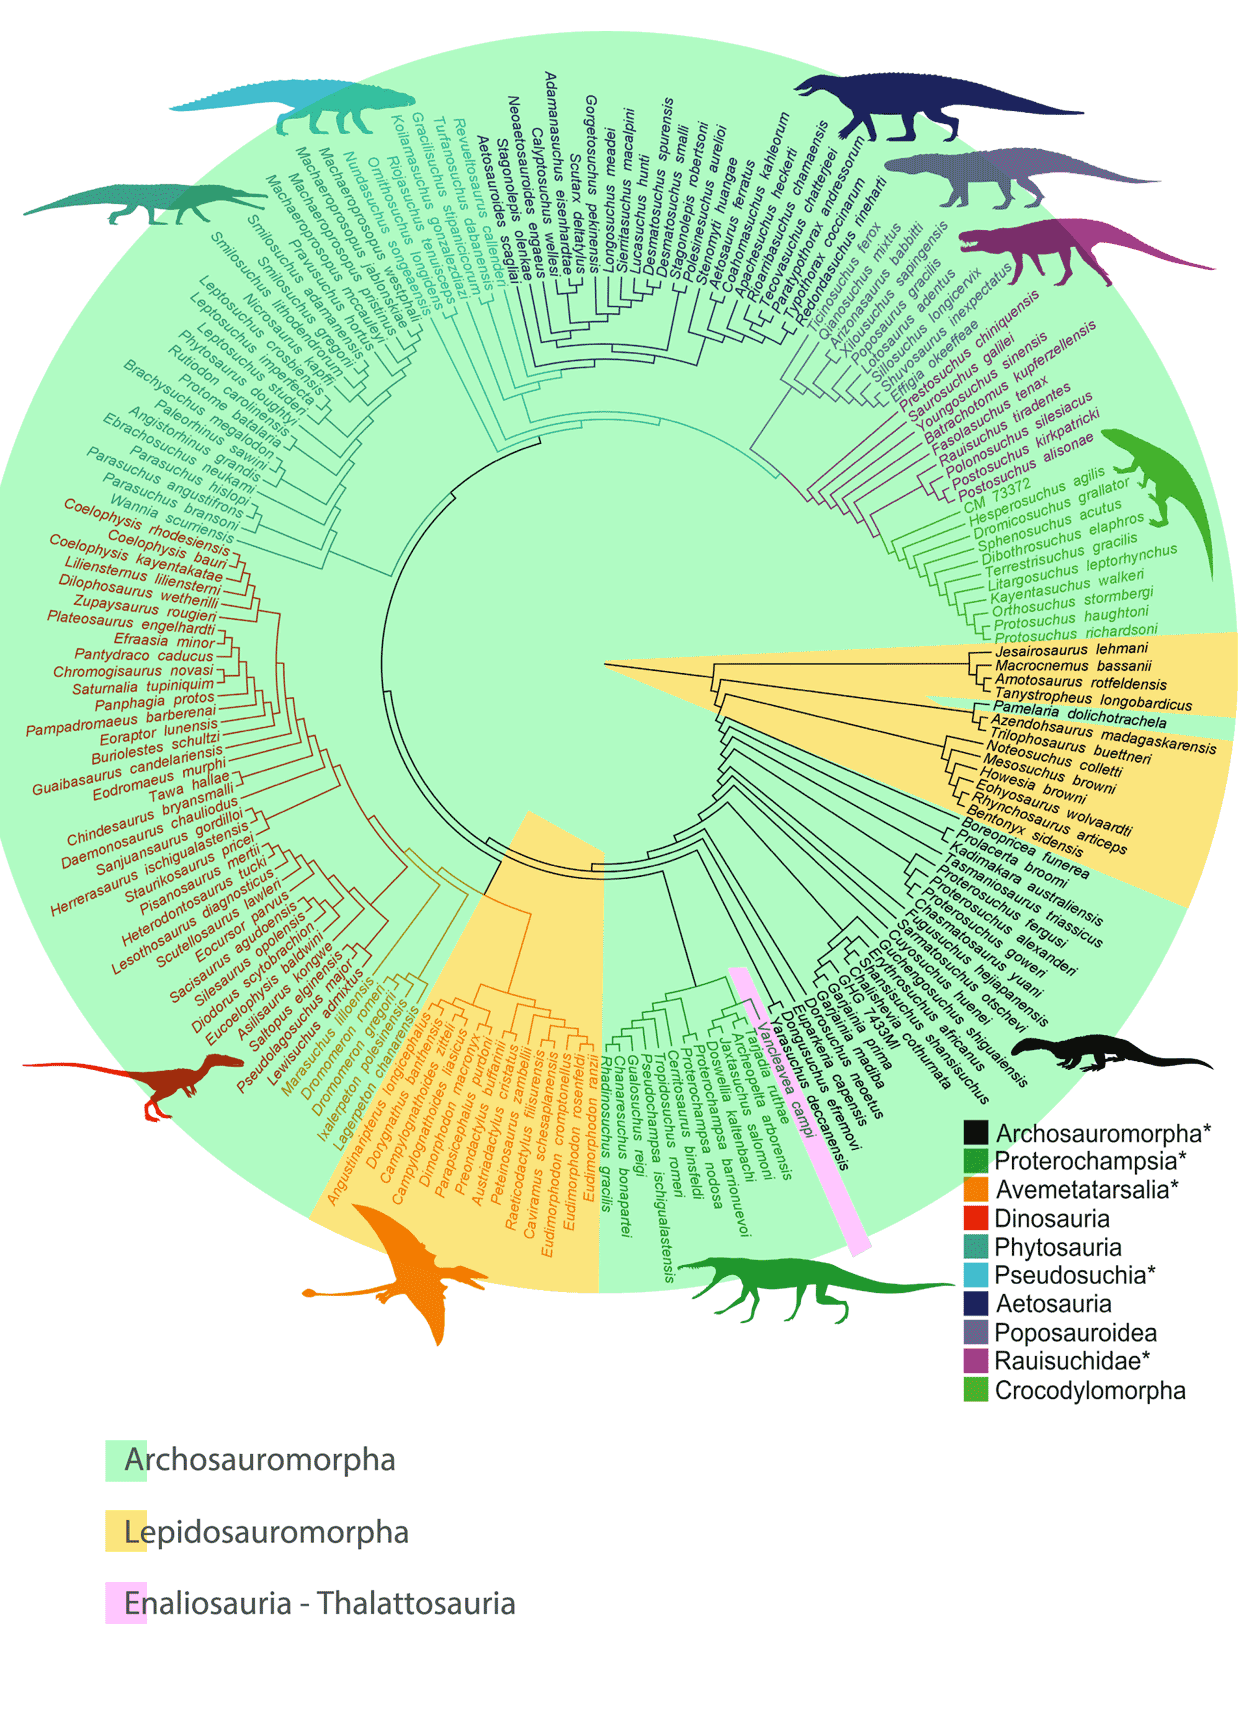 Allen et al. 2018 cladogram